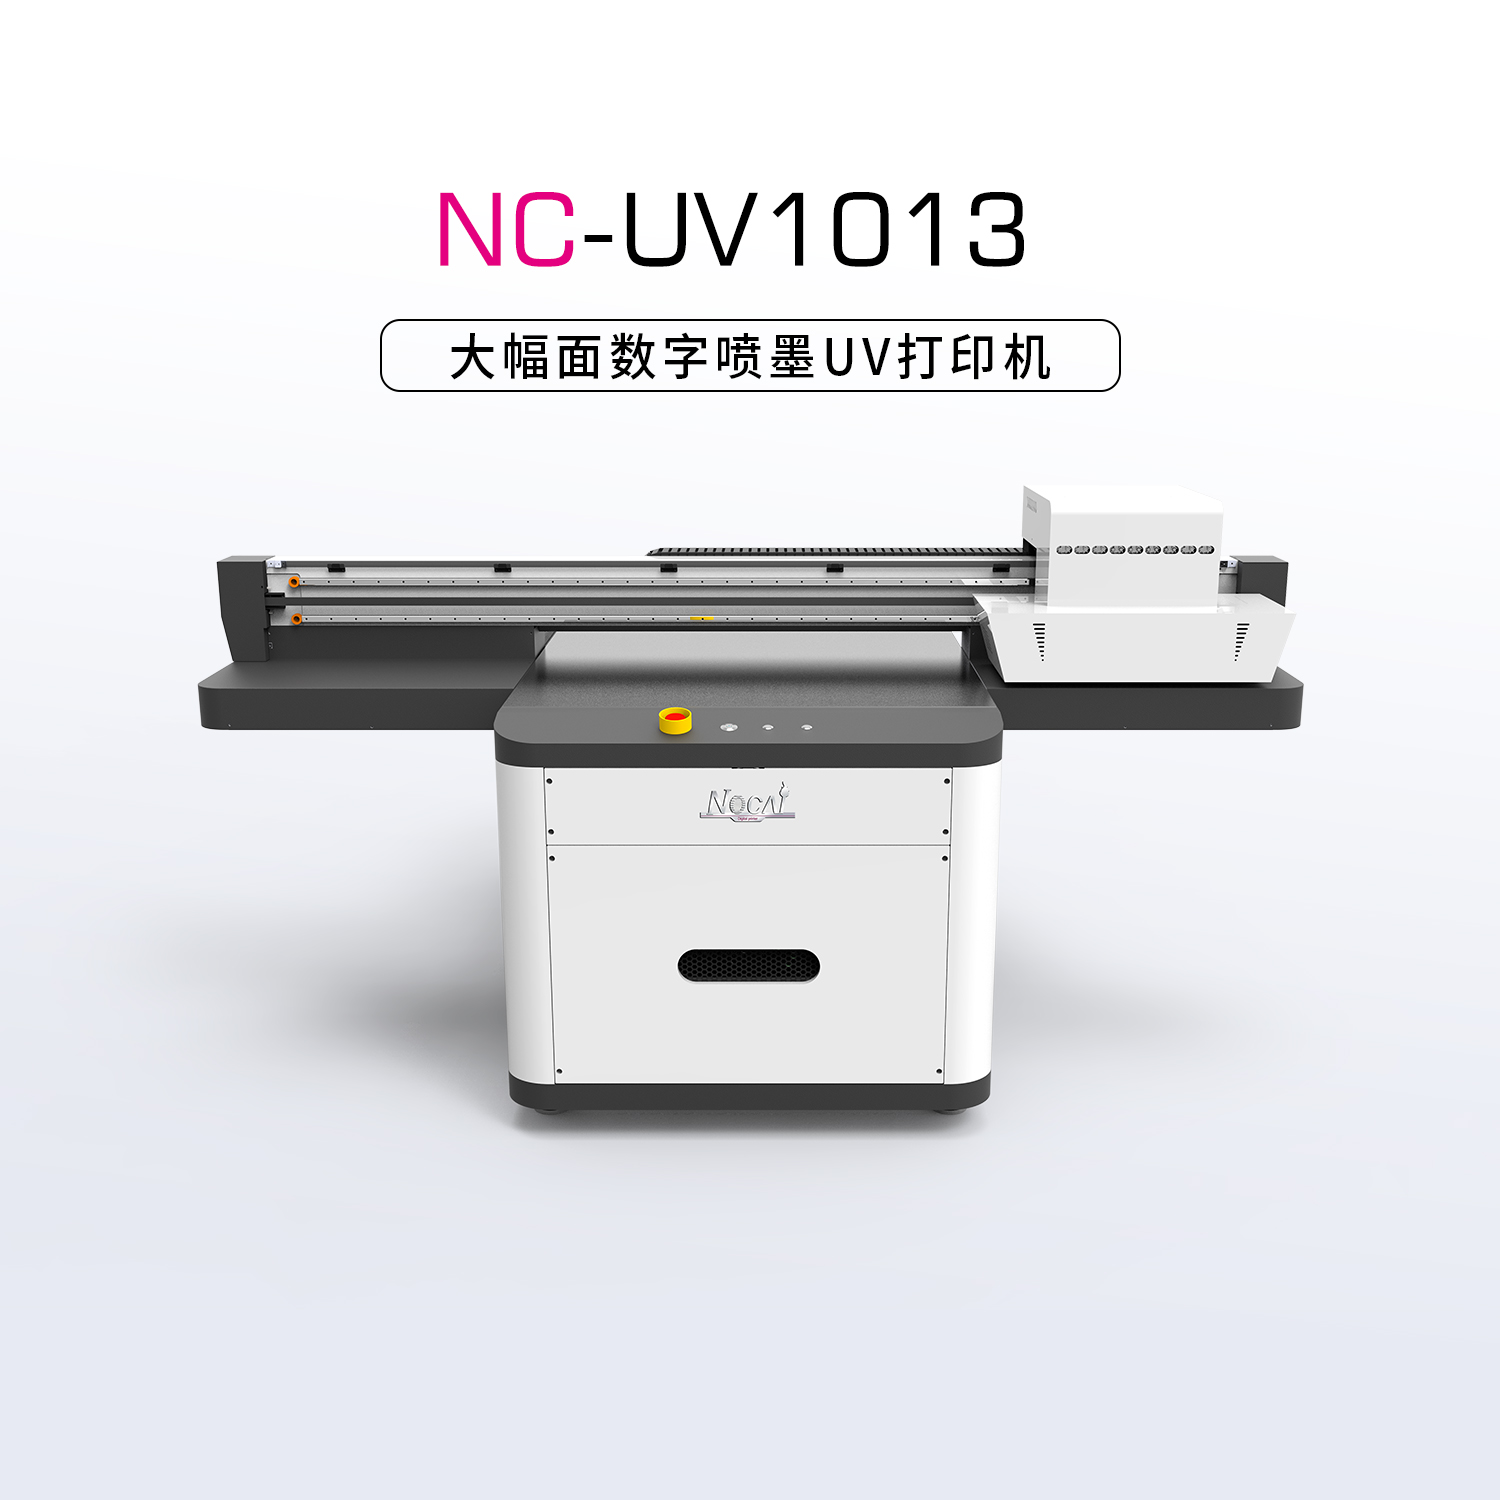 NC-UV1013